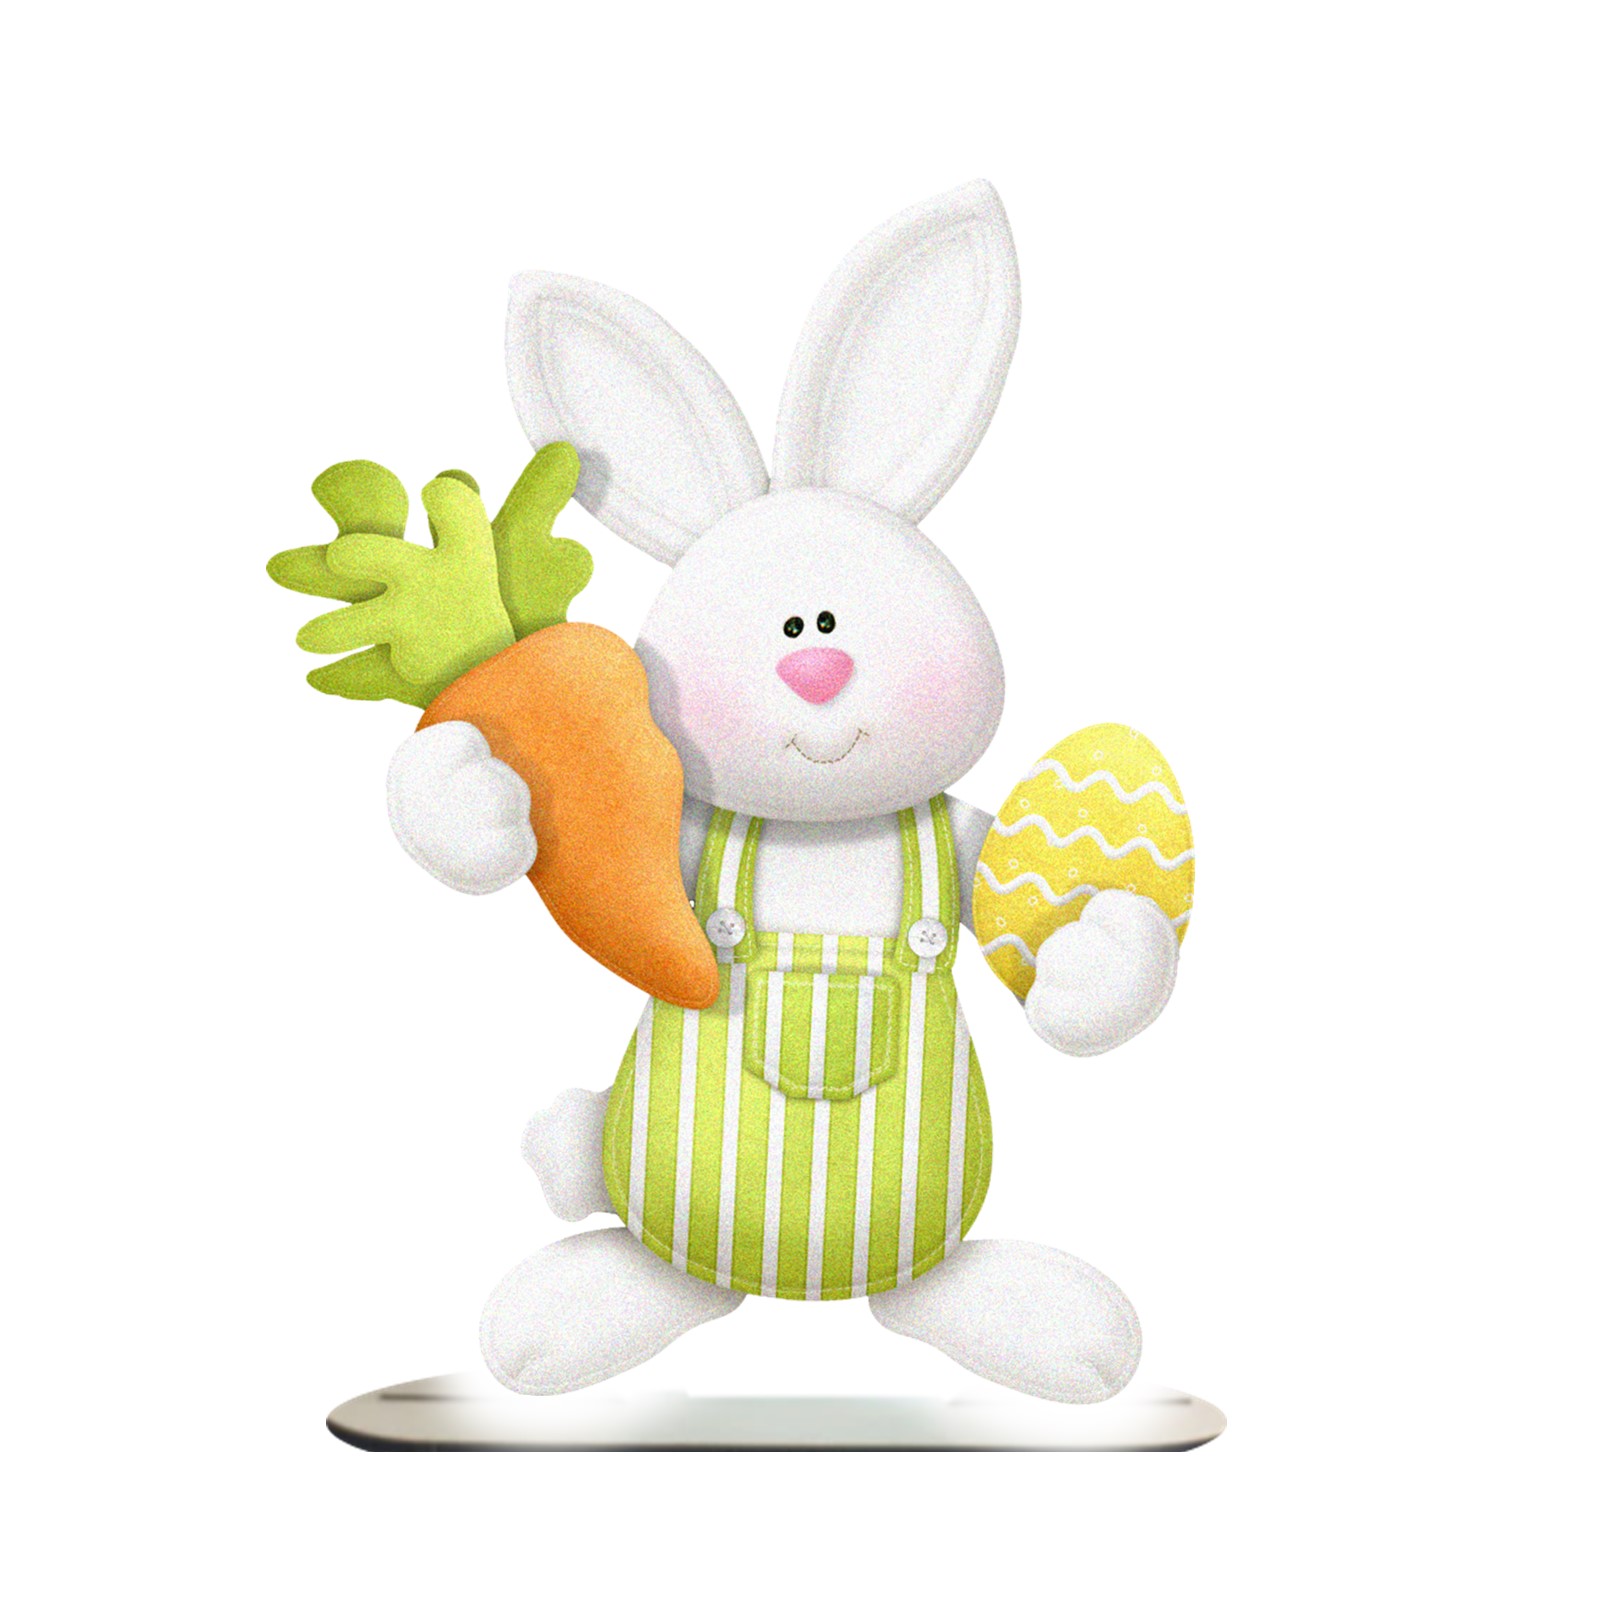 استند رومیزی تزیینی مدل خرگوش با هویج و تخم مرغ